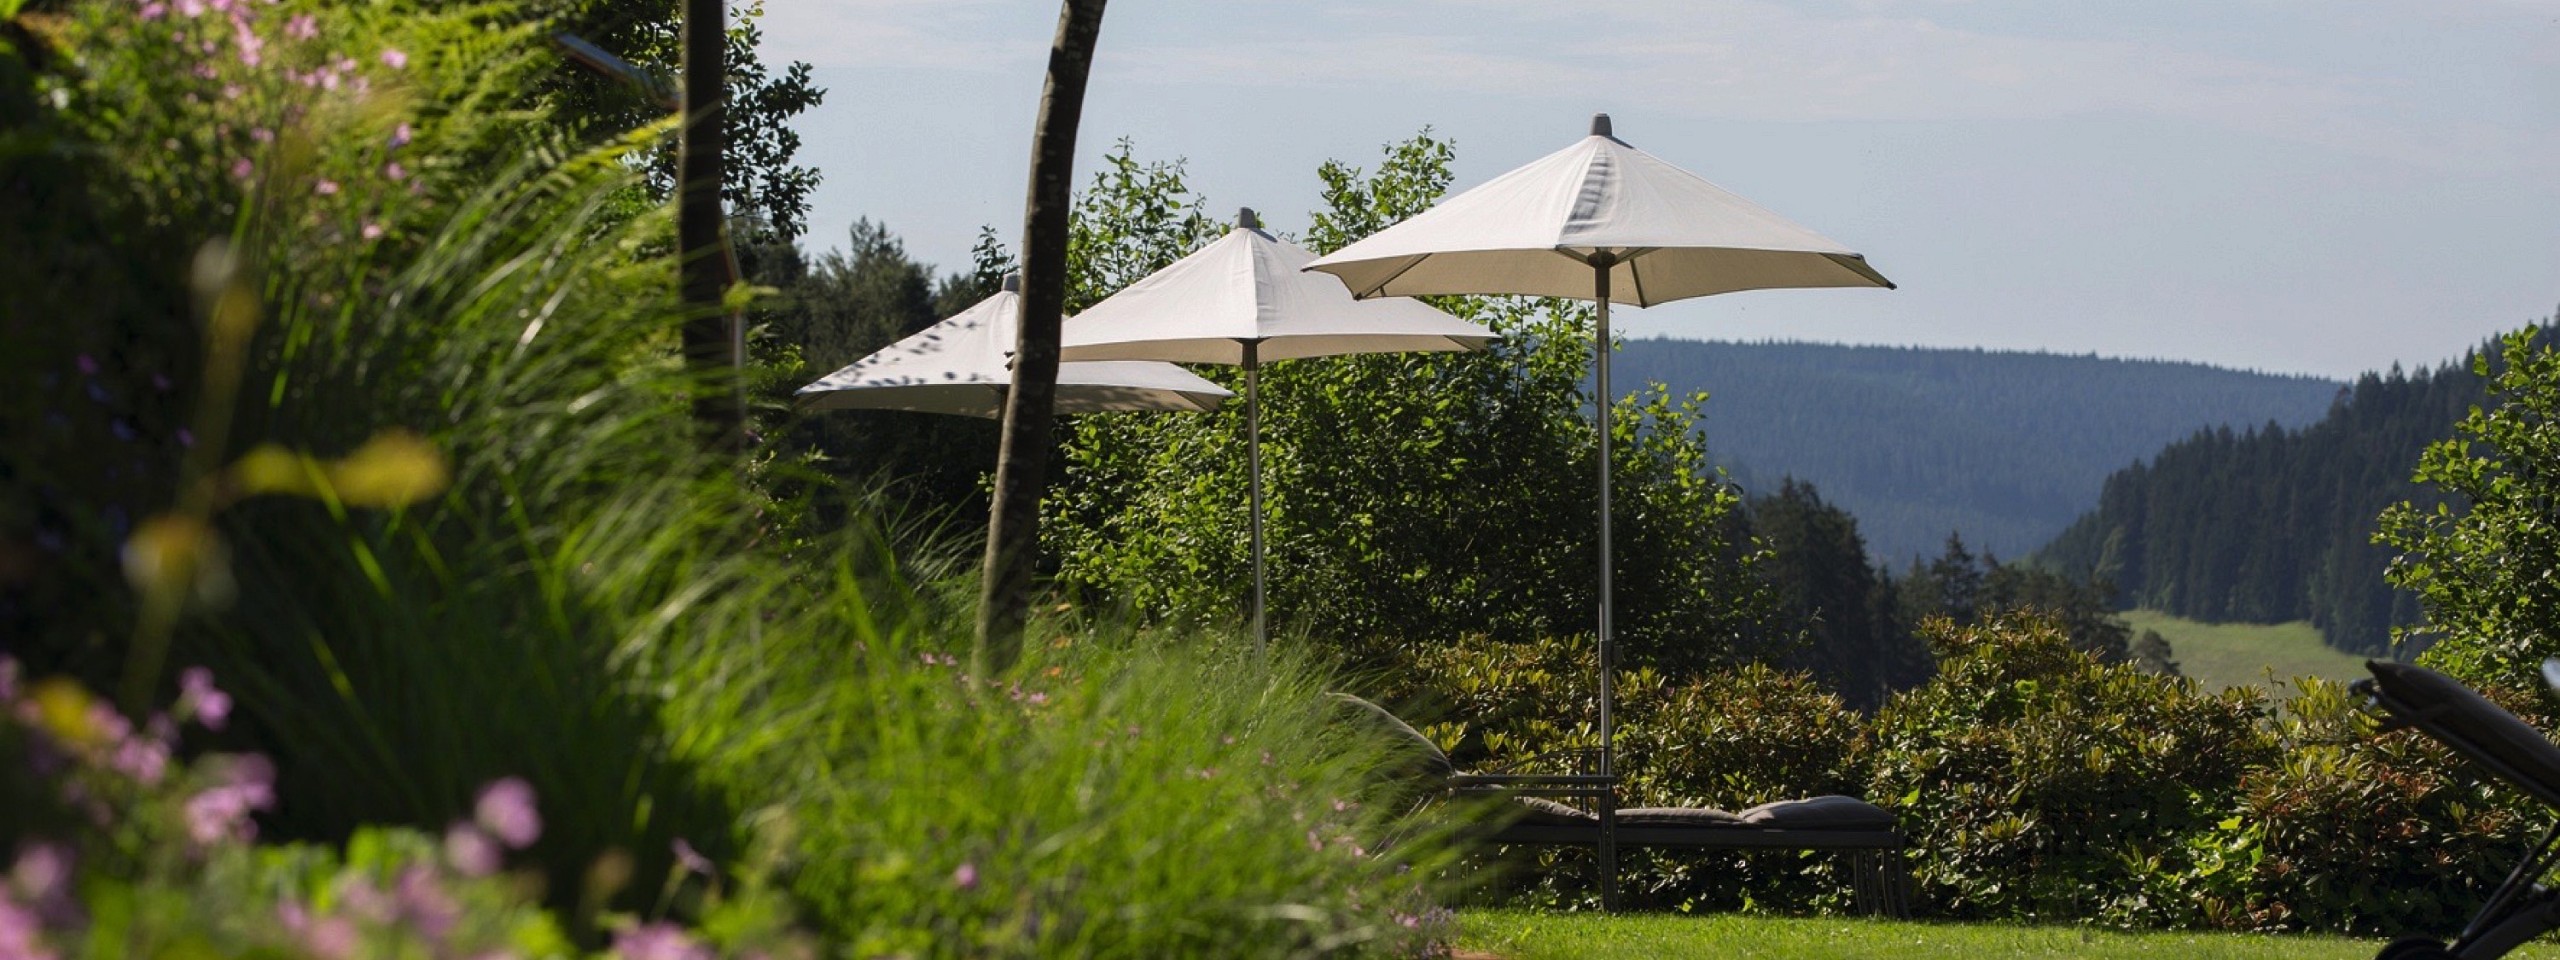 Außenbereich des Hotels mit Arrangements im Schwarzwald mit Liegen und Sonnenschirmen.